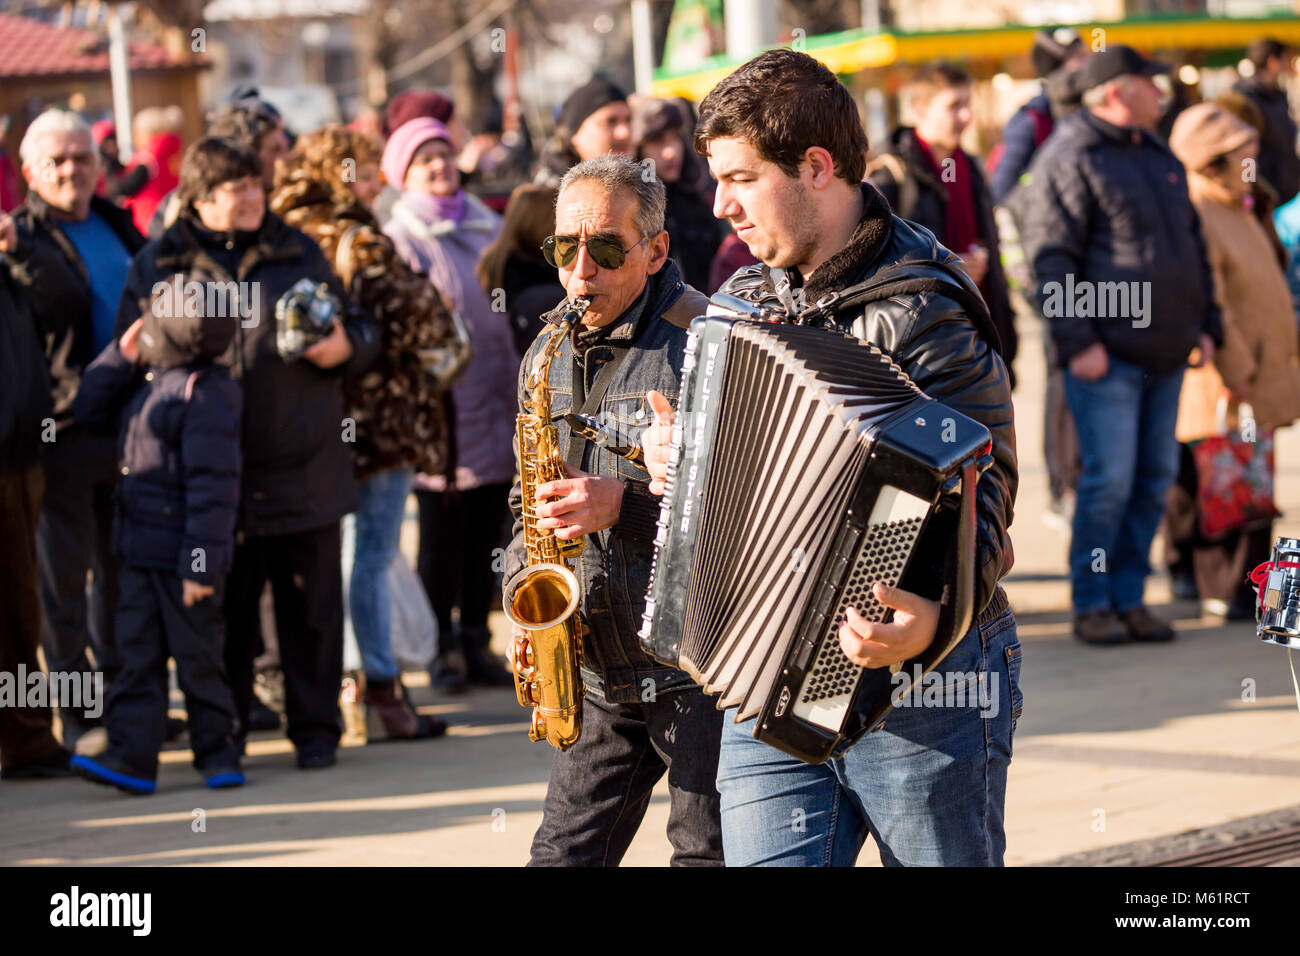 PERNIK, BULGARIE - 26 janvier 2018 : Ancien musicien de rue avec des cheveux blancs et lunettes de saxophone joue en marchant à l'édition 2004 du International Fest Banque D'Images